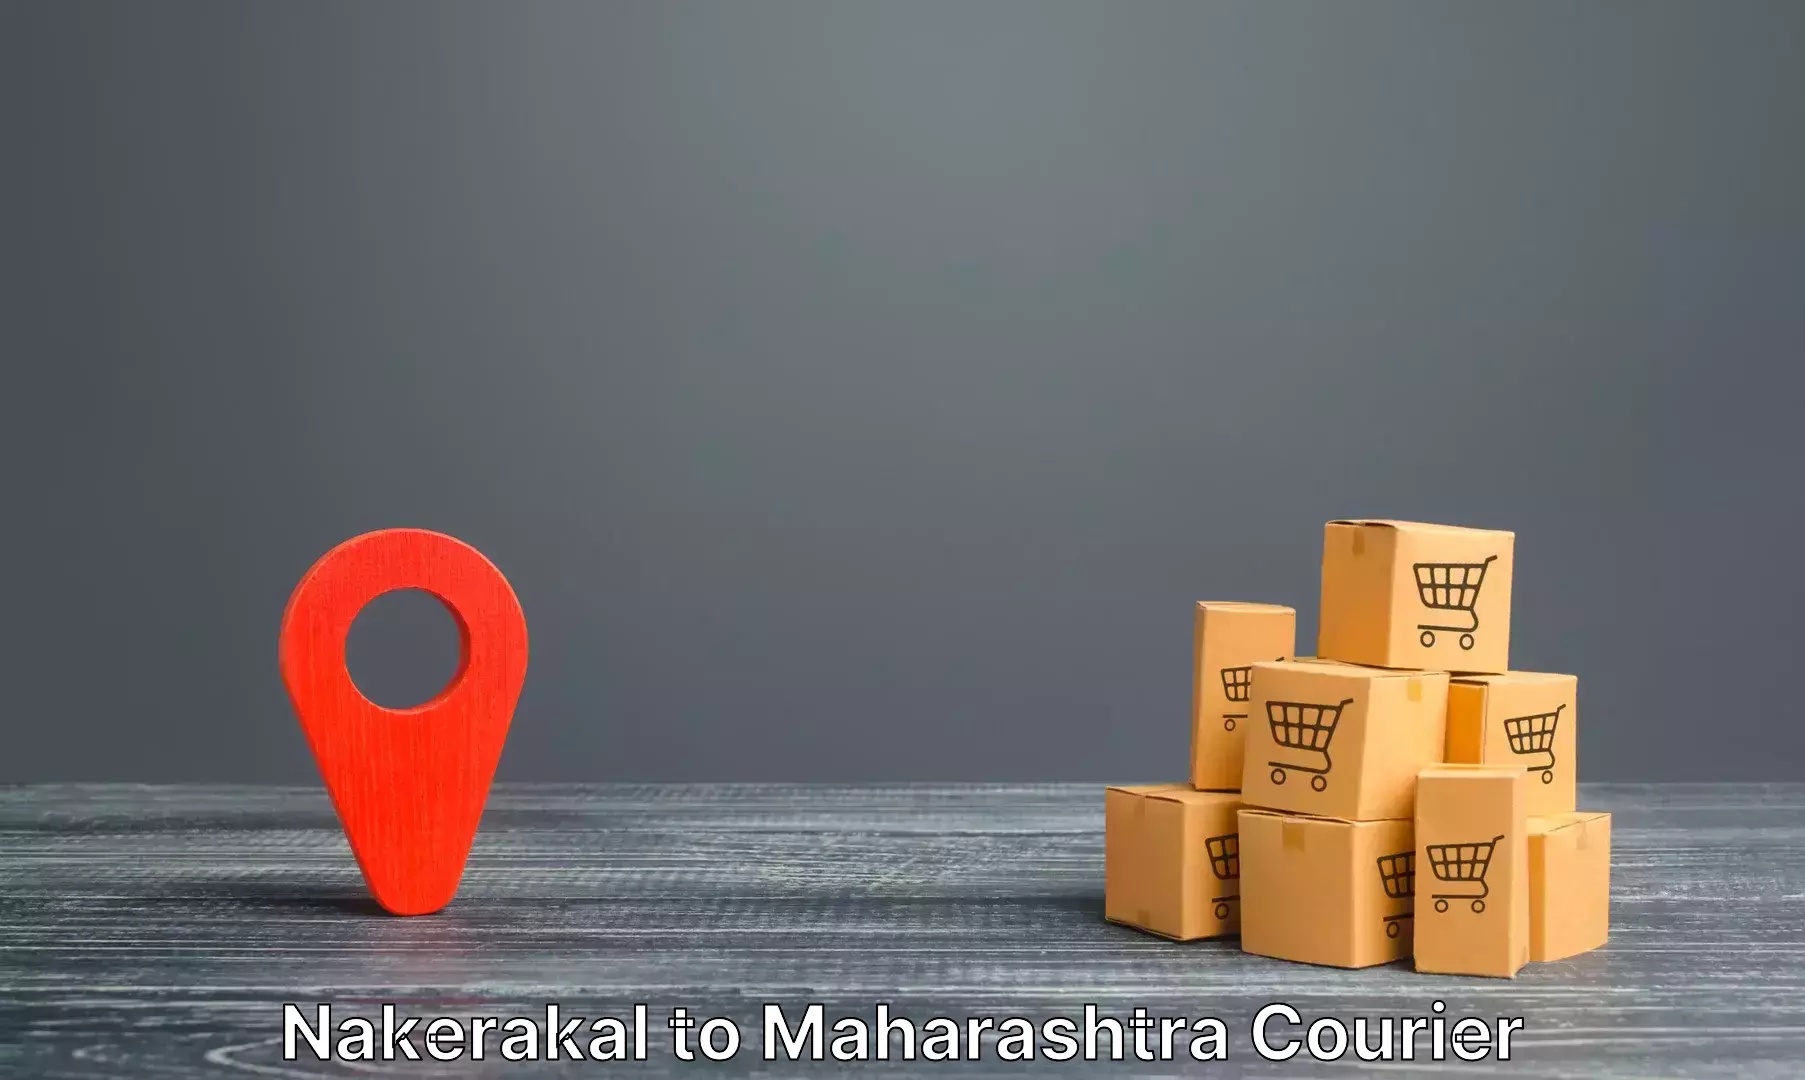 Luggage shipping consultation Nakerakal to IIT Mumbai